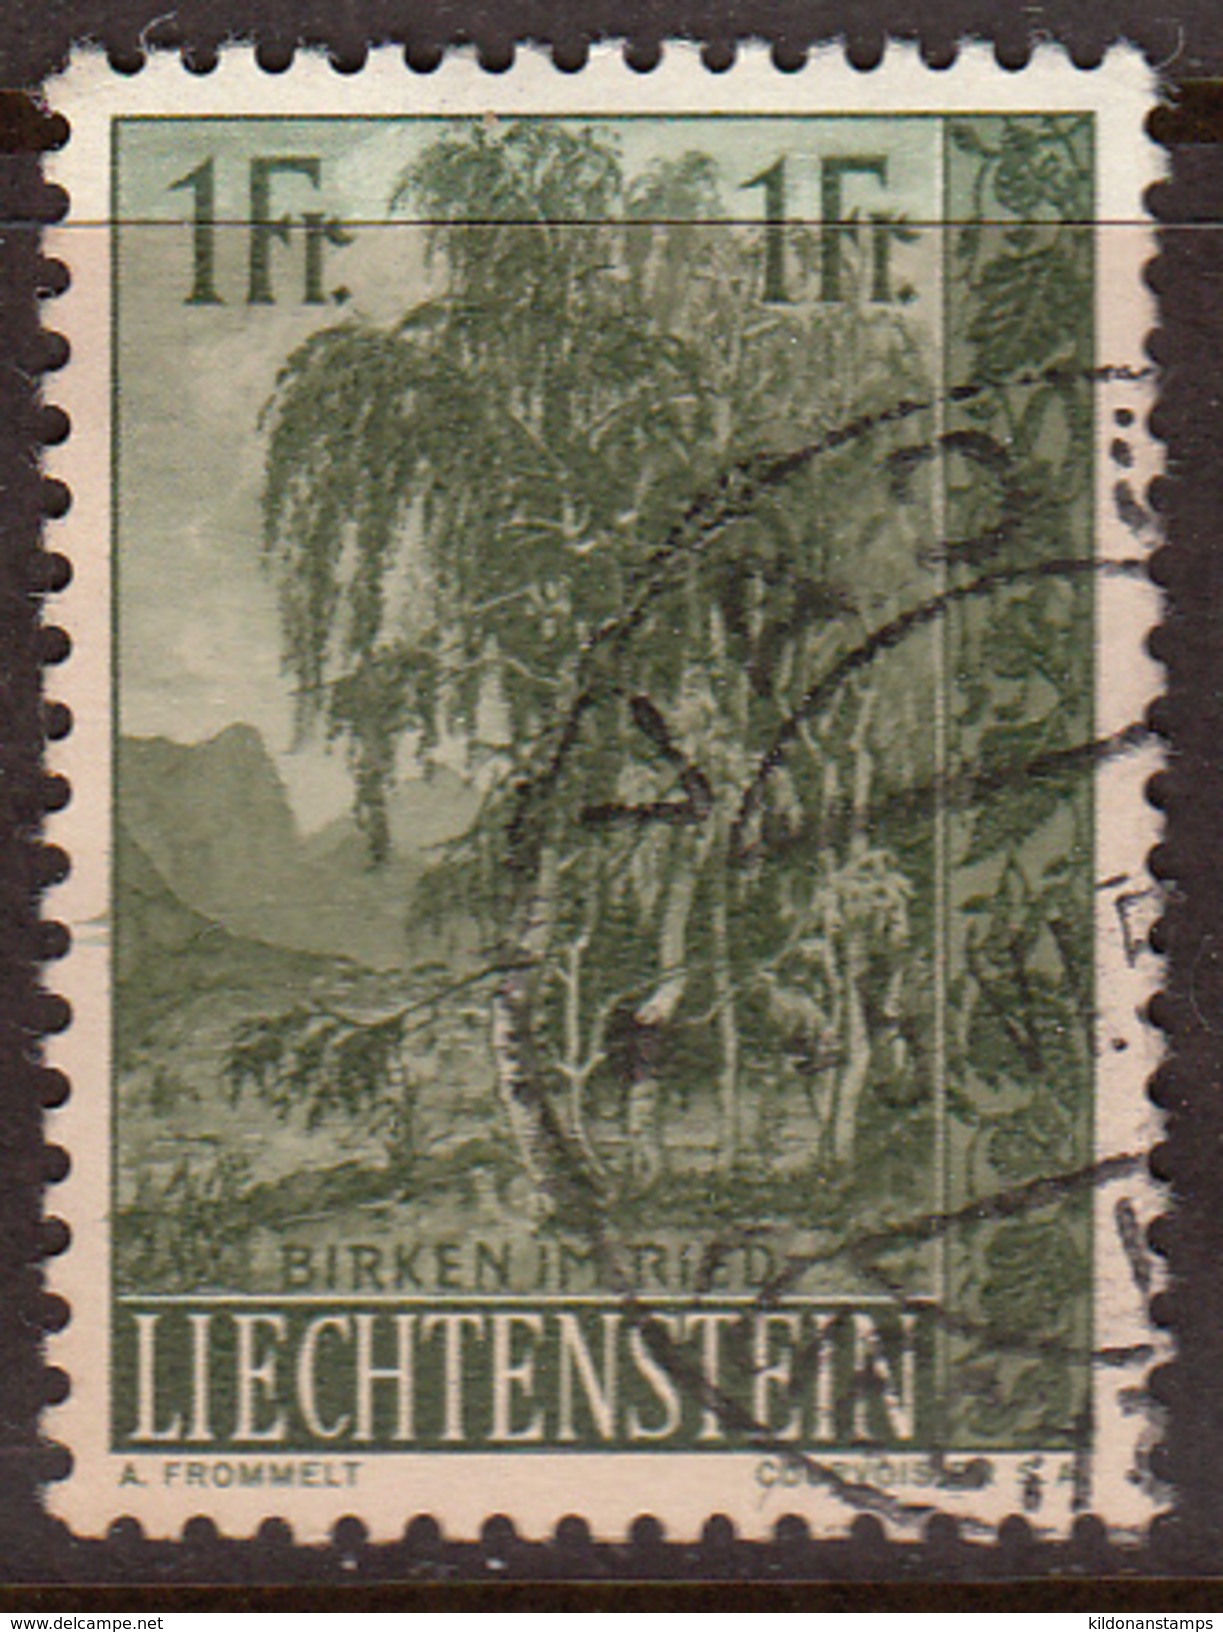 Liechtenstein 1957, Cancelled, Sc# 314 - Used Stamps